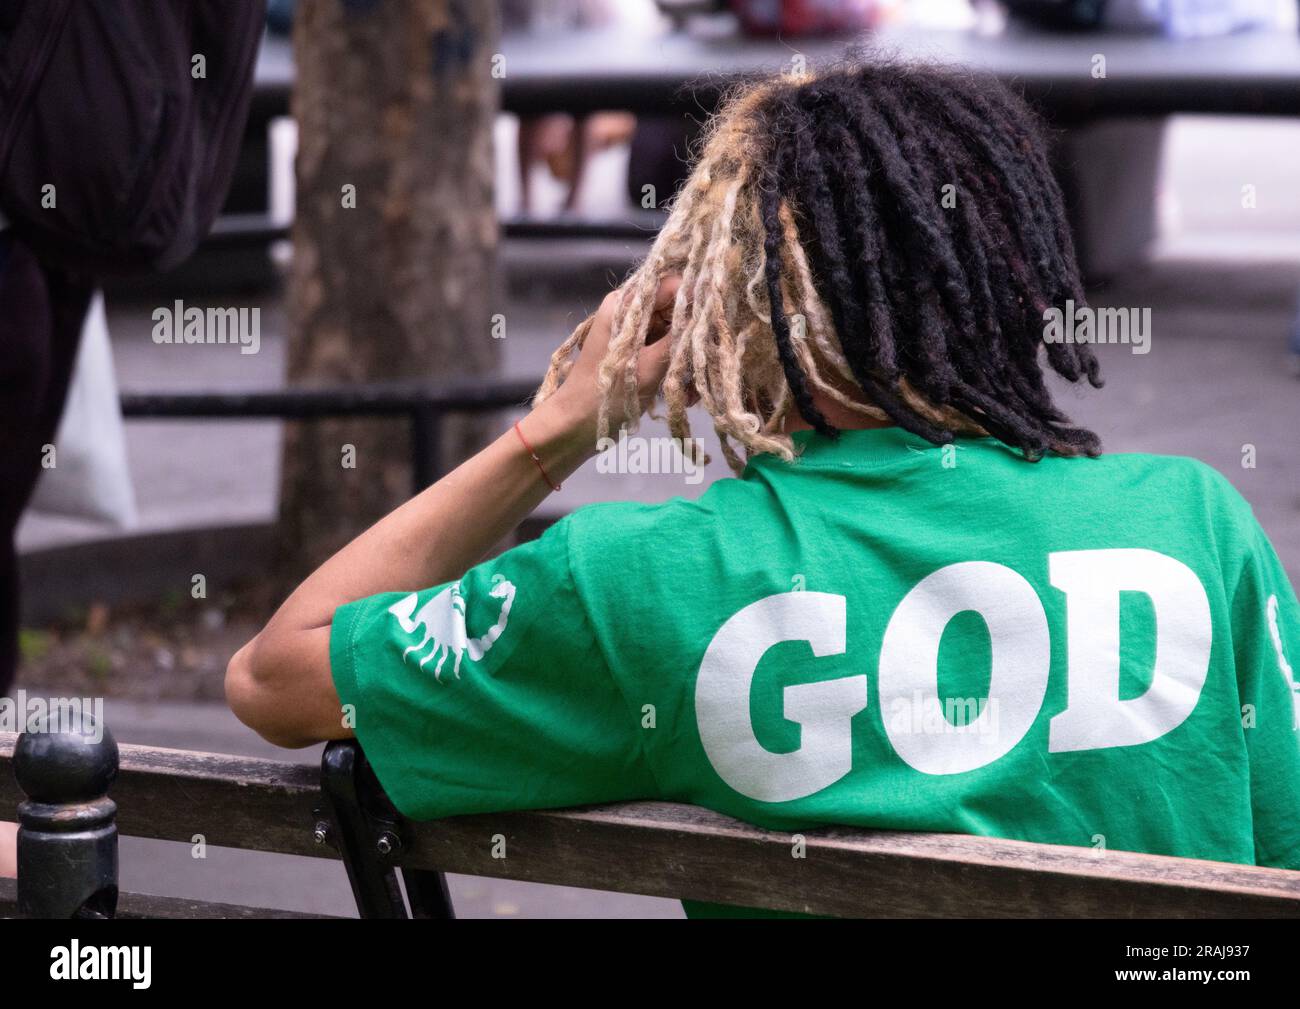 Ein junger Mann, der zu denken scheint, er sei Gott. In einem Park in Greenwich Village, Manhattan. Stockfoto